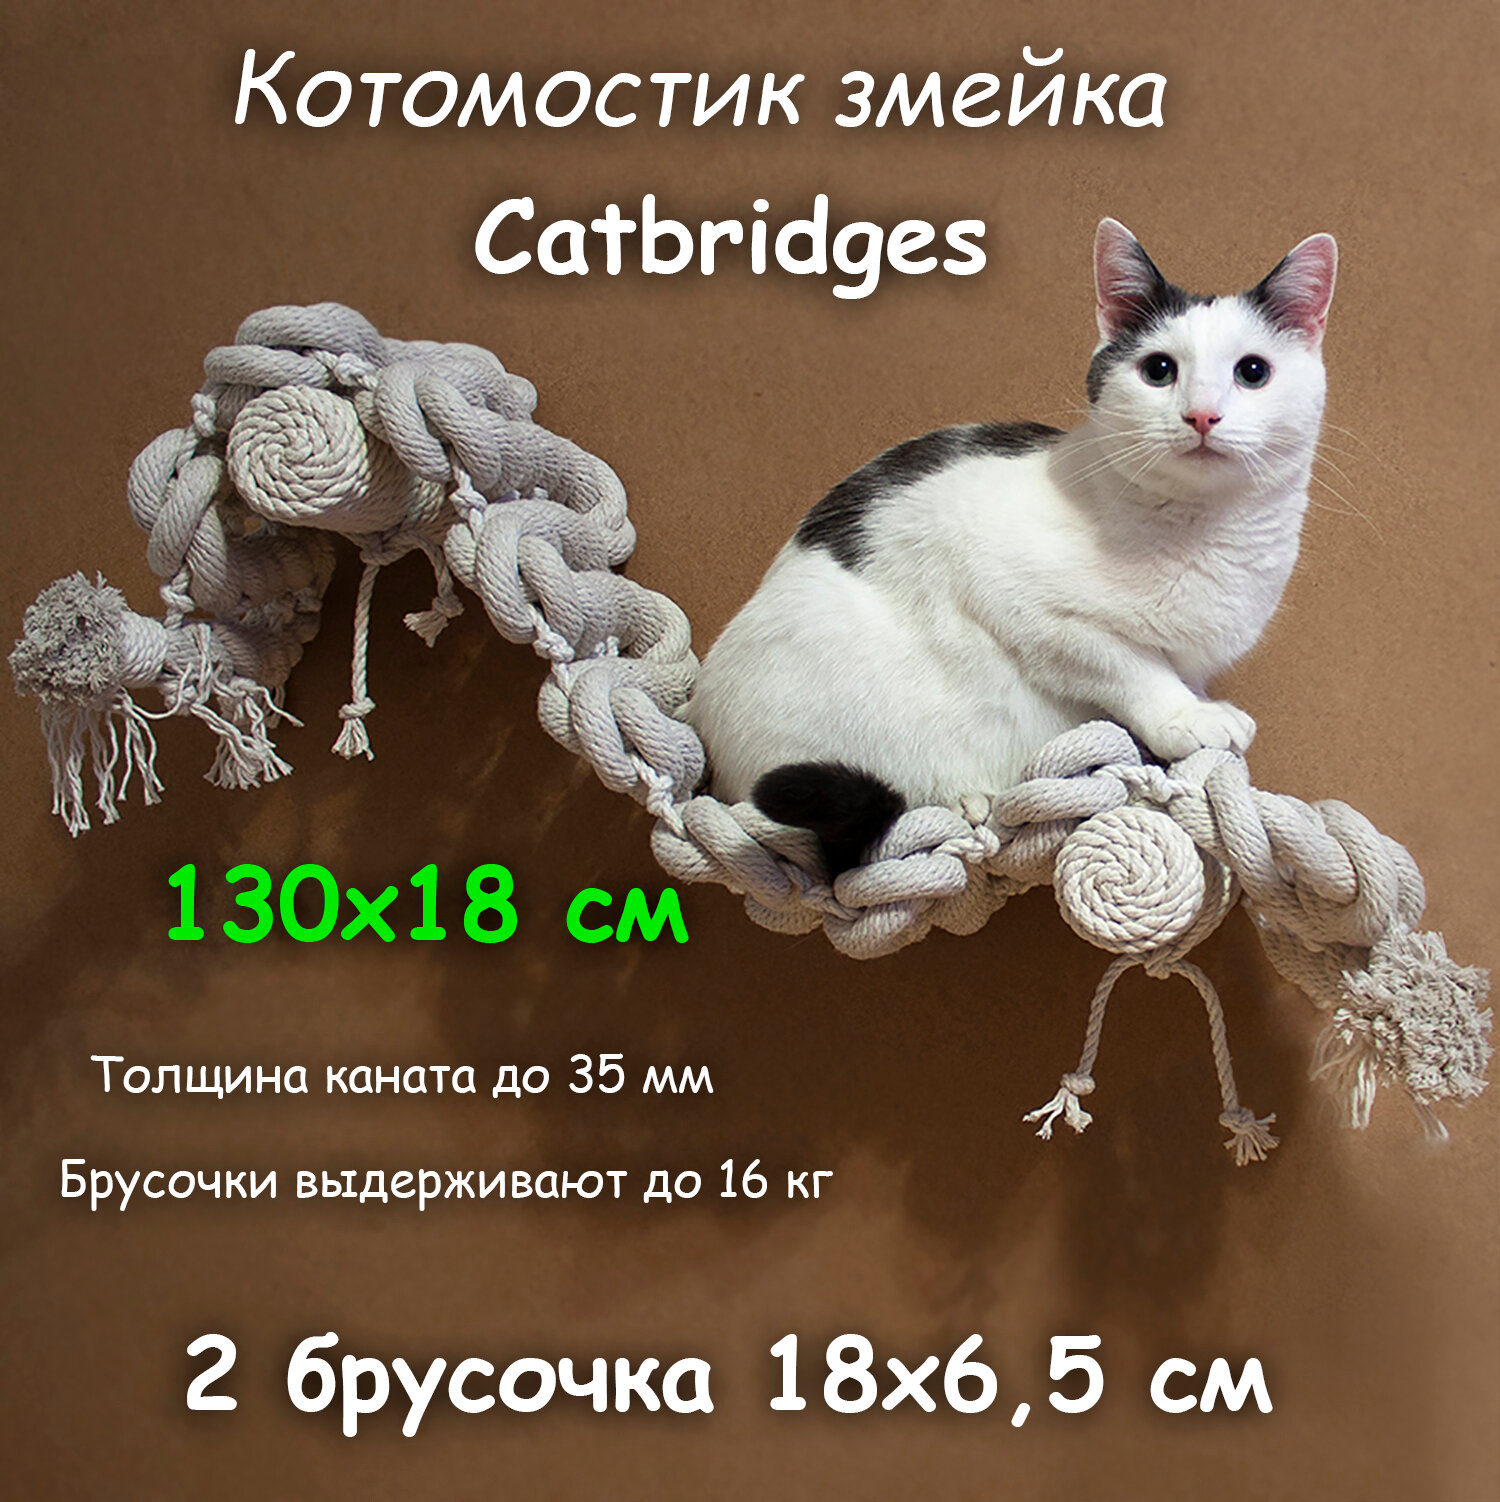 Когтеточка для кошки из хлопка . 130х18 см, 2 брусочка . канат 32 мм, шпилька 8 мм . Котомостик Змейка от Catbridges . Белый . Лежанка .